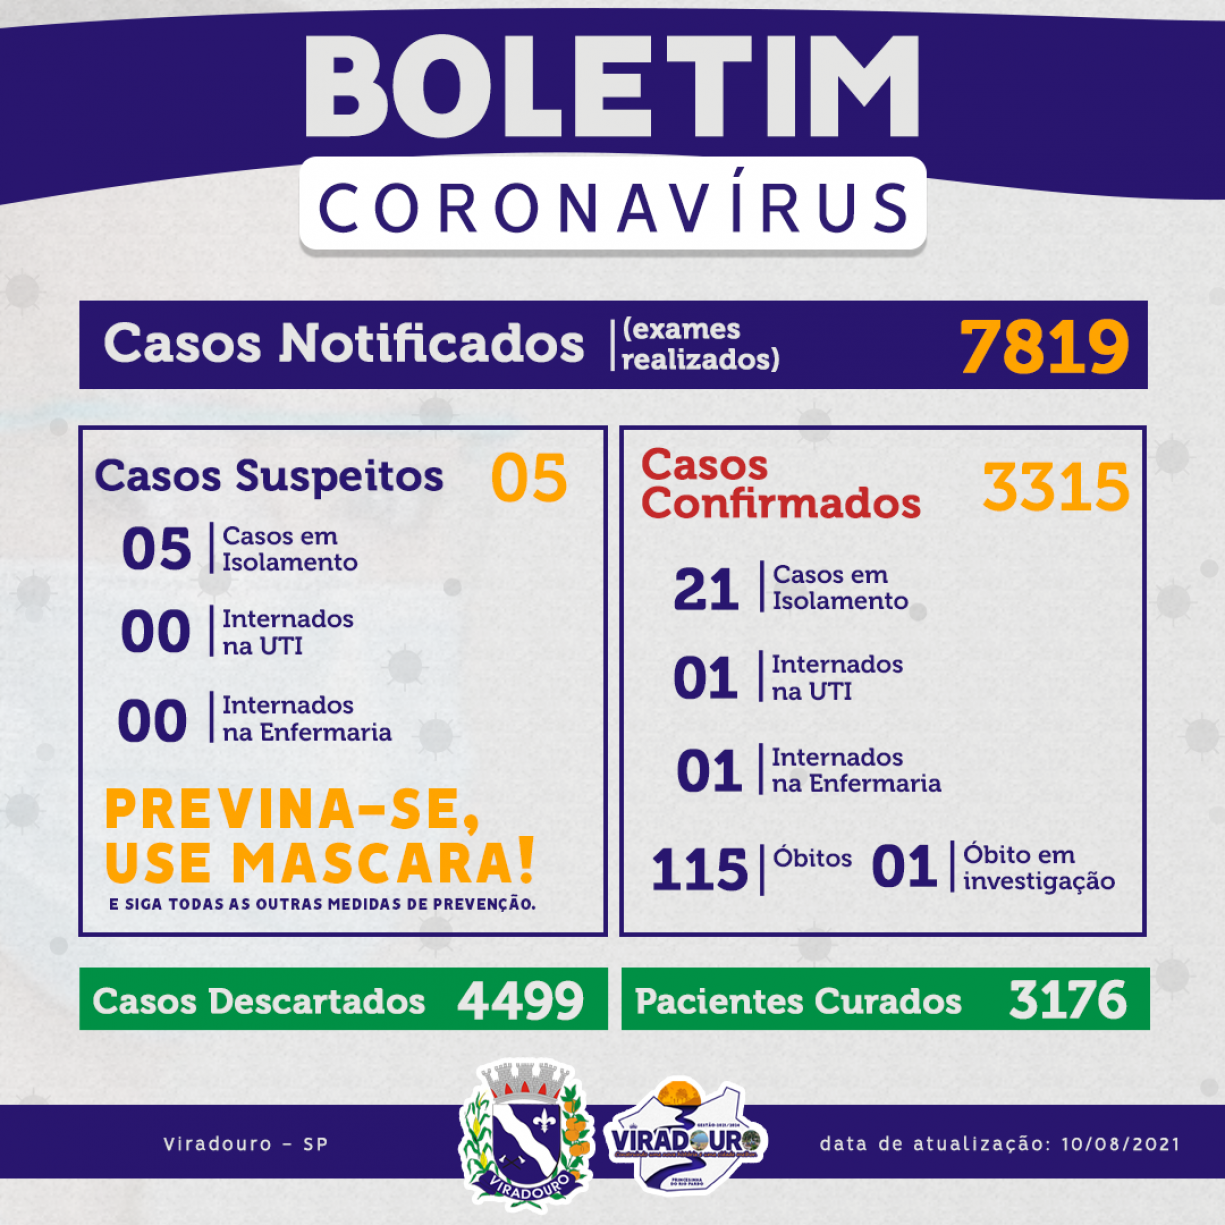 CORONAVÍRUS: BOLETIM EPIDEMIOLÓGICO (ATUALIZAÇÃO 10/08/2021)